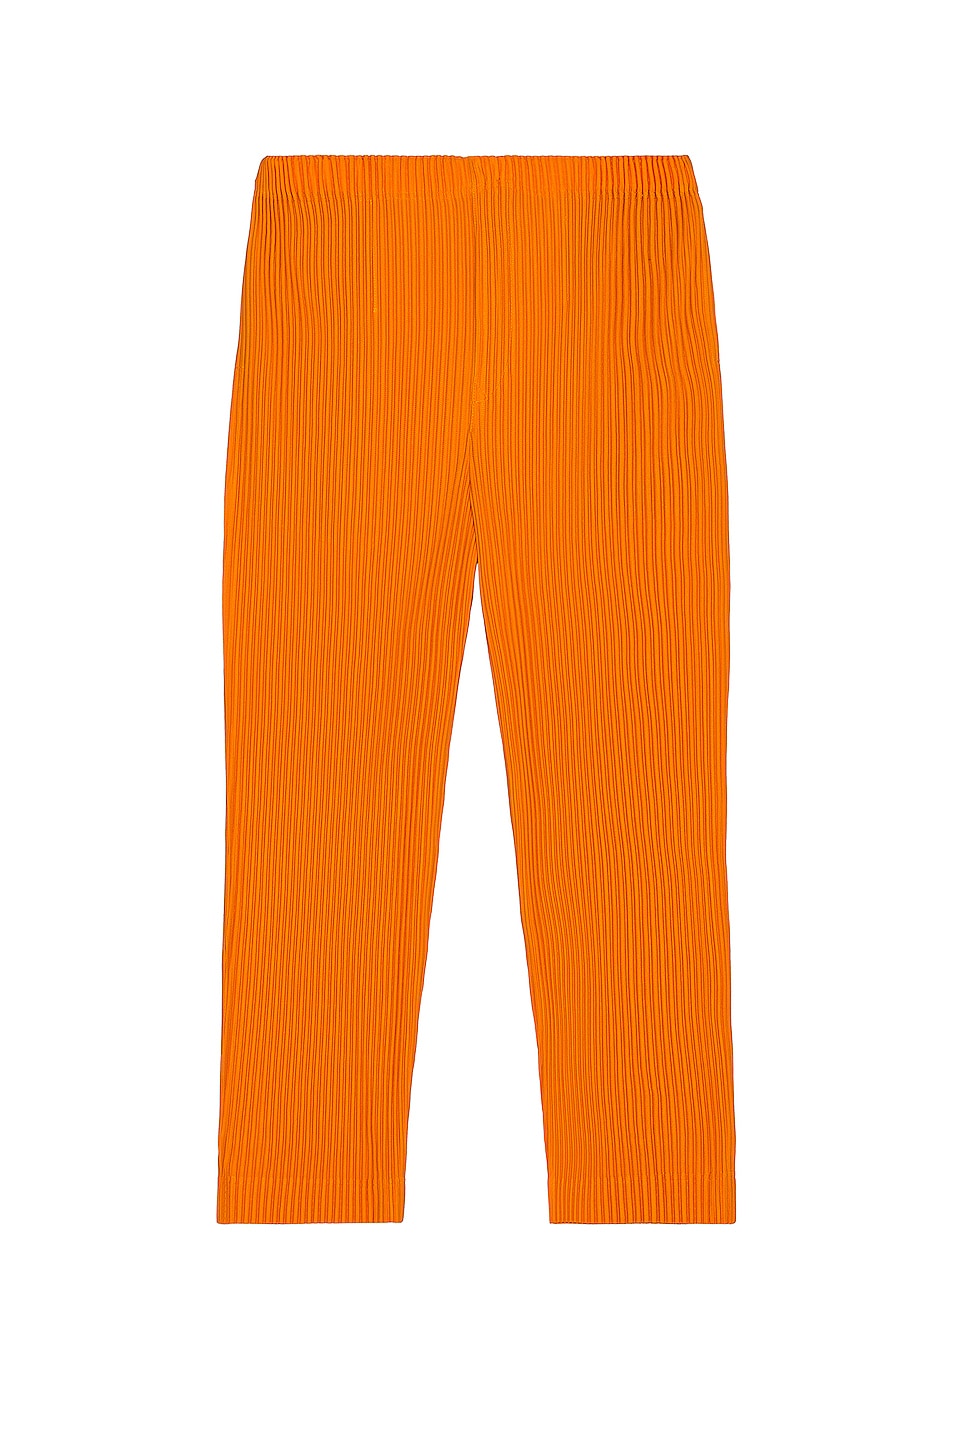 Image 1 of Homme Plisse Issey Miyake Pants in Permanent Orange